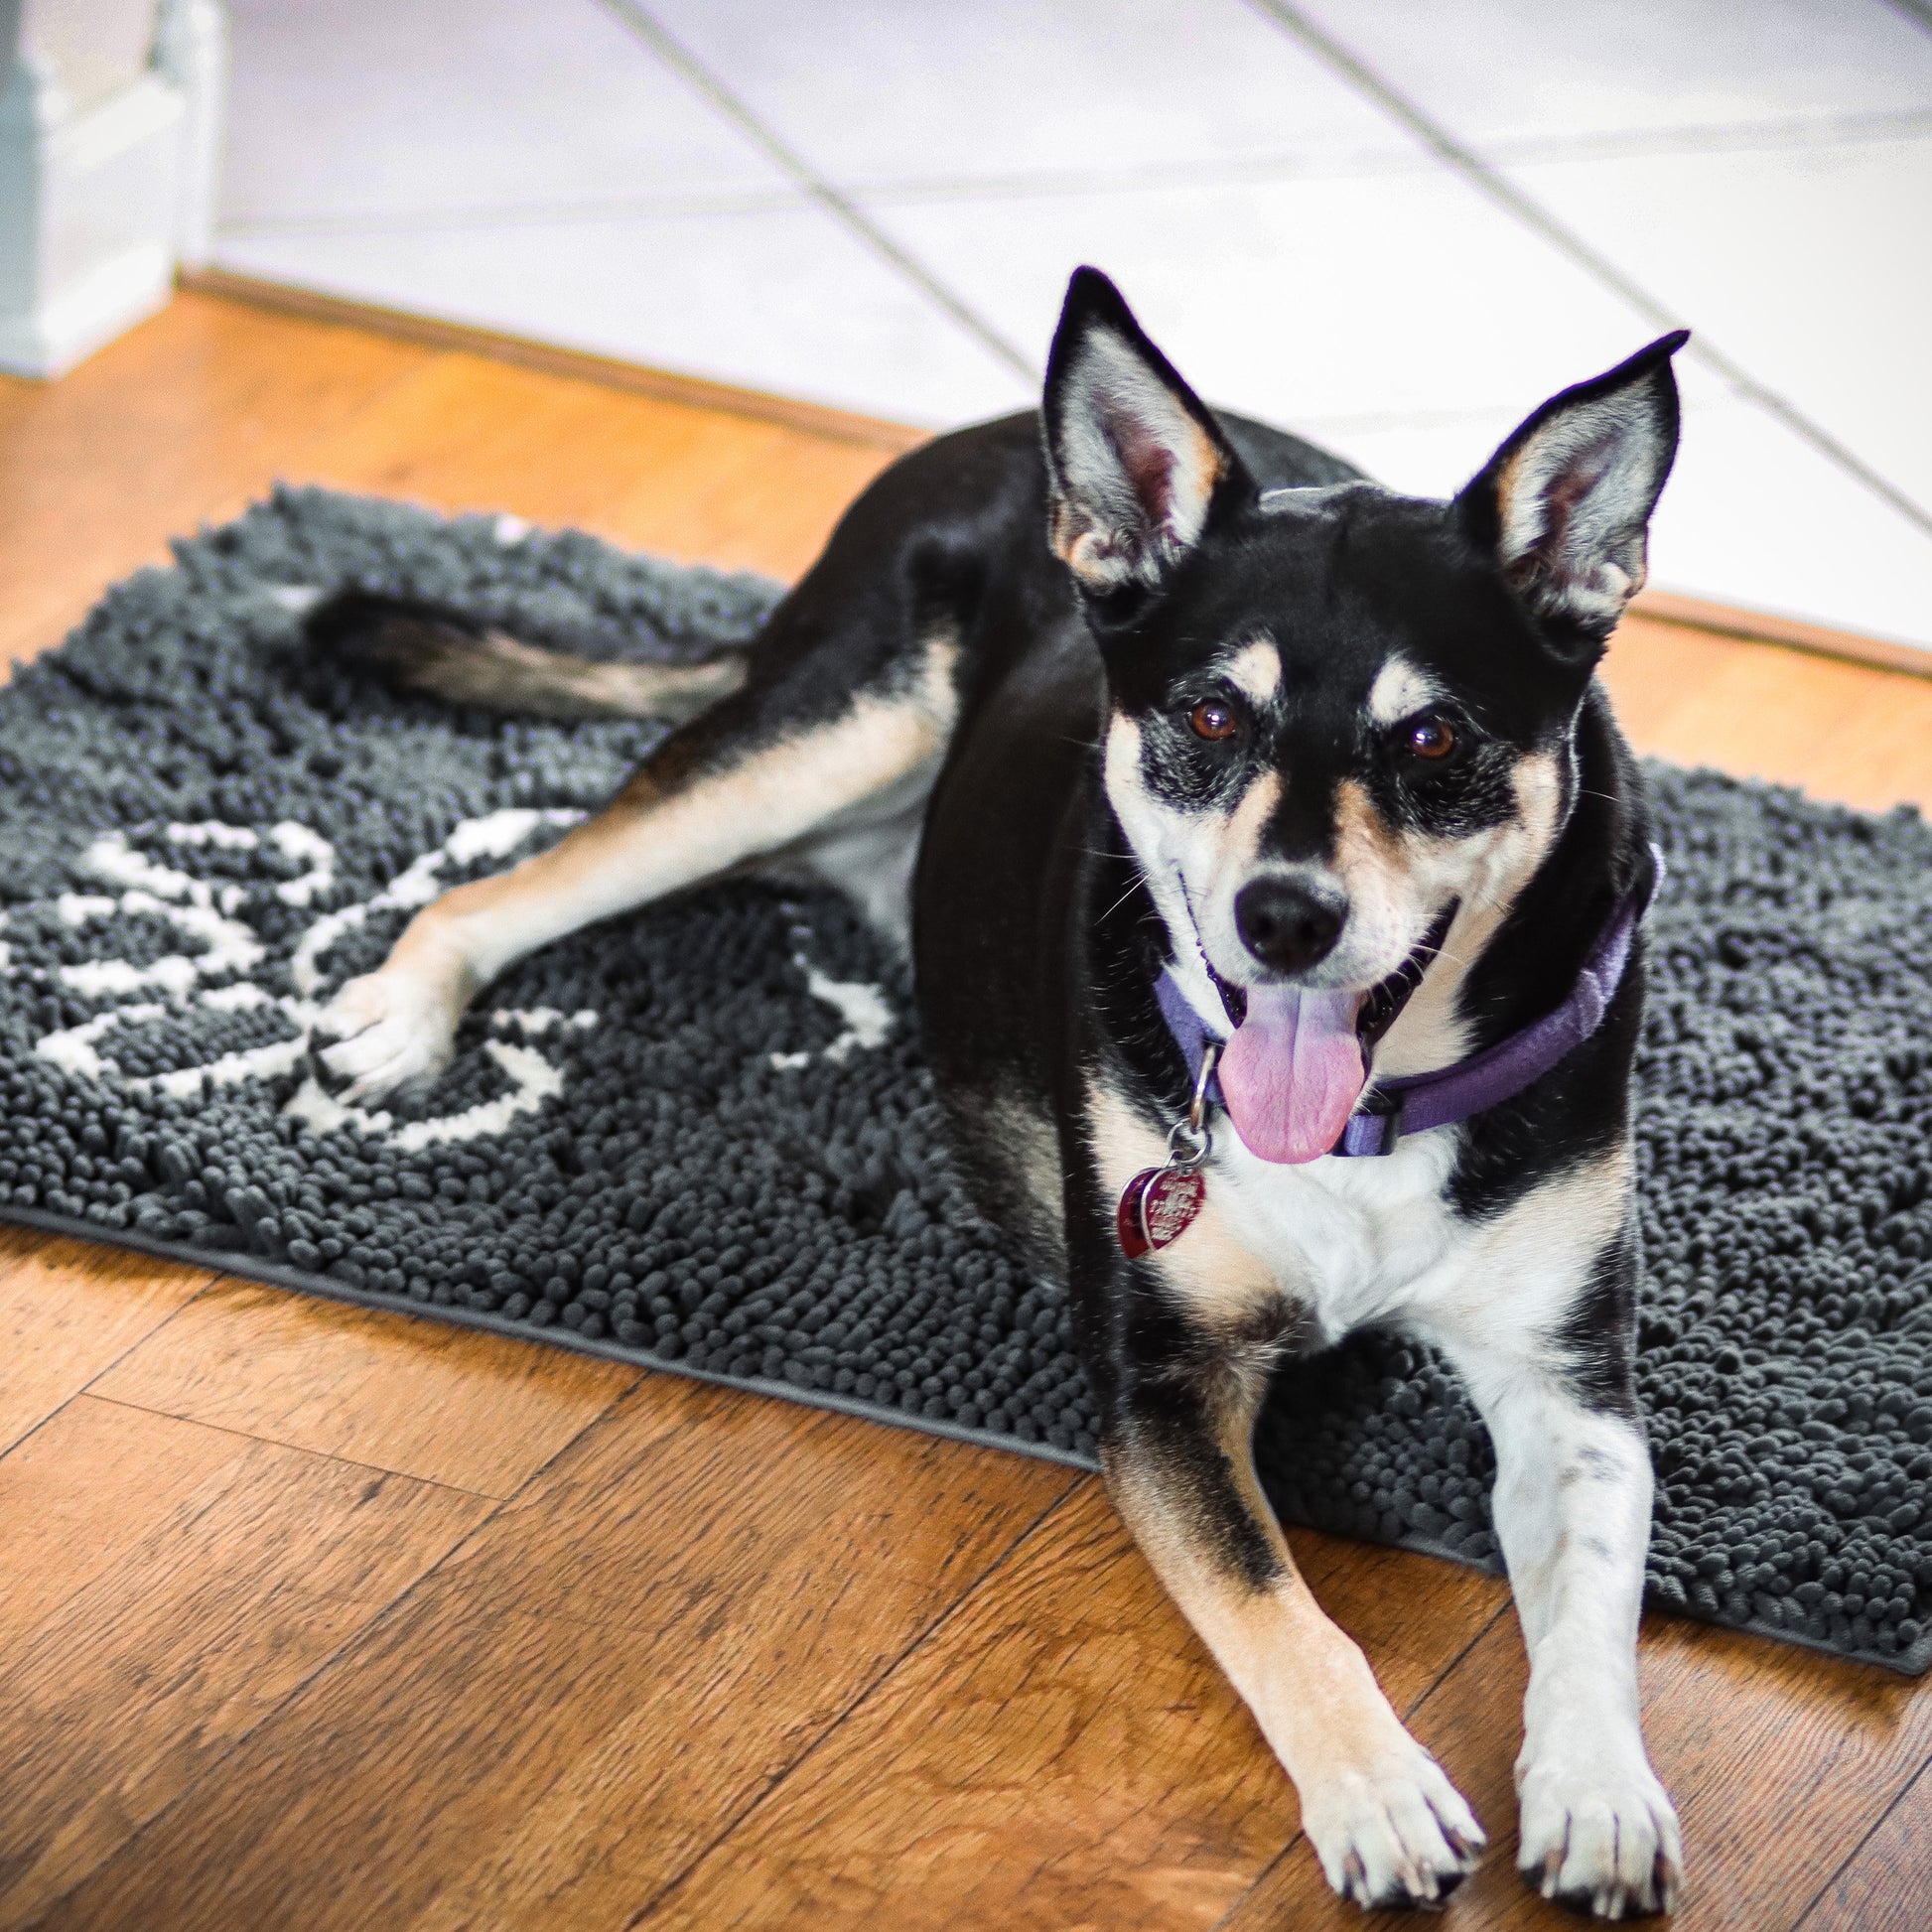 Dog Paw Print Skid-Resistant Floor Runner Mat